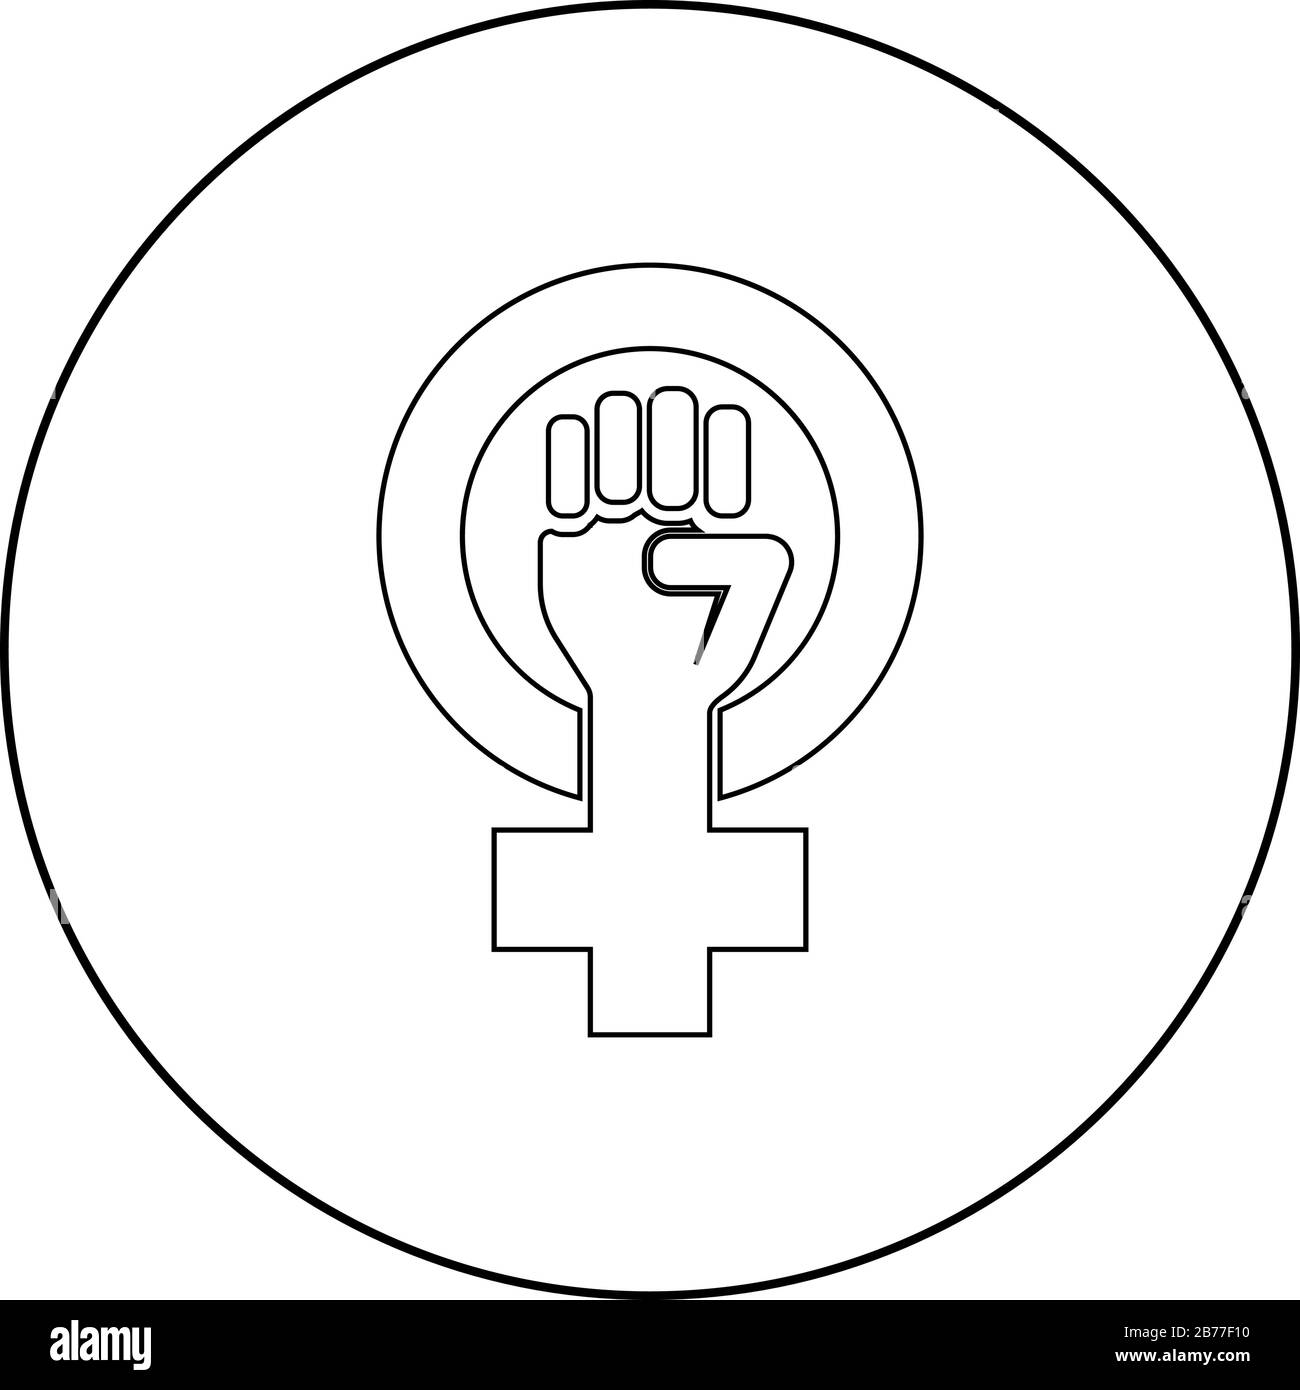 Symbol der Feminismusbewegung Geschlecht Frauen widerstehen Fausthand in rund- und Kreuzsymbol in kreisrundem Umriss schwarze Farbvektor-Illustration flacher Stil Stock Vektor